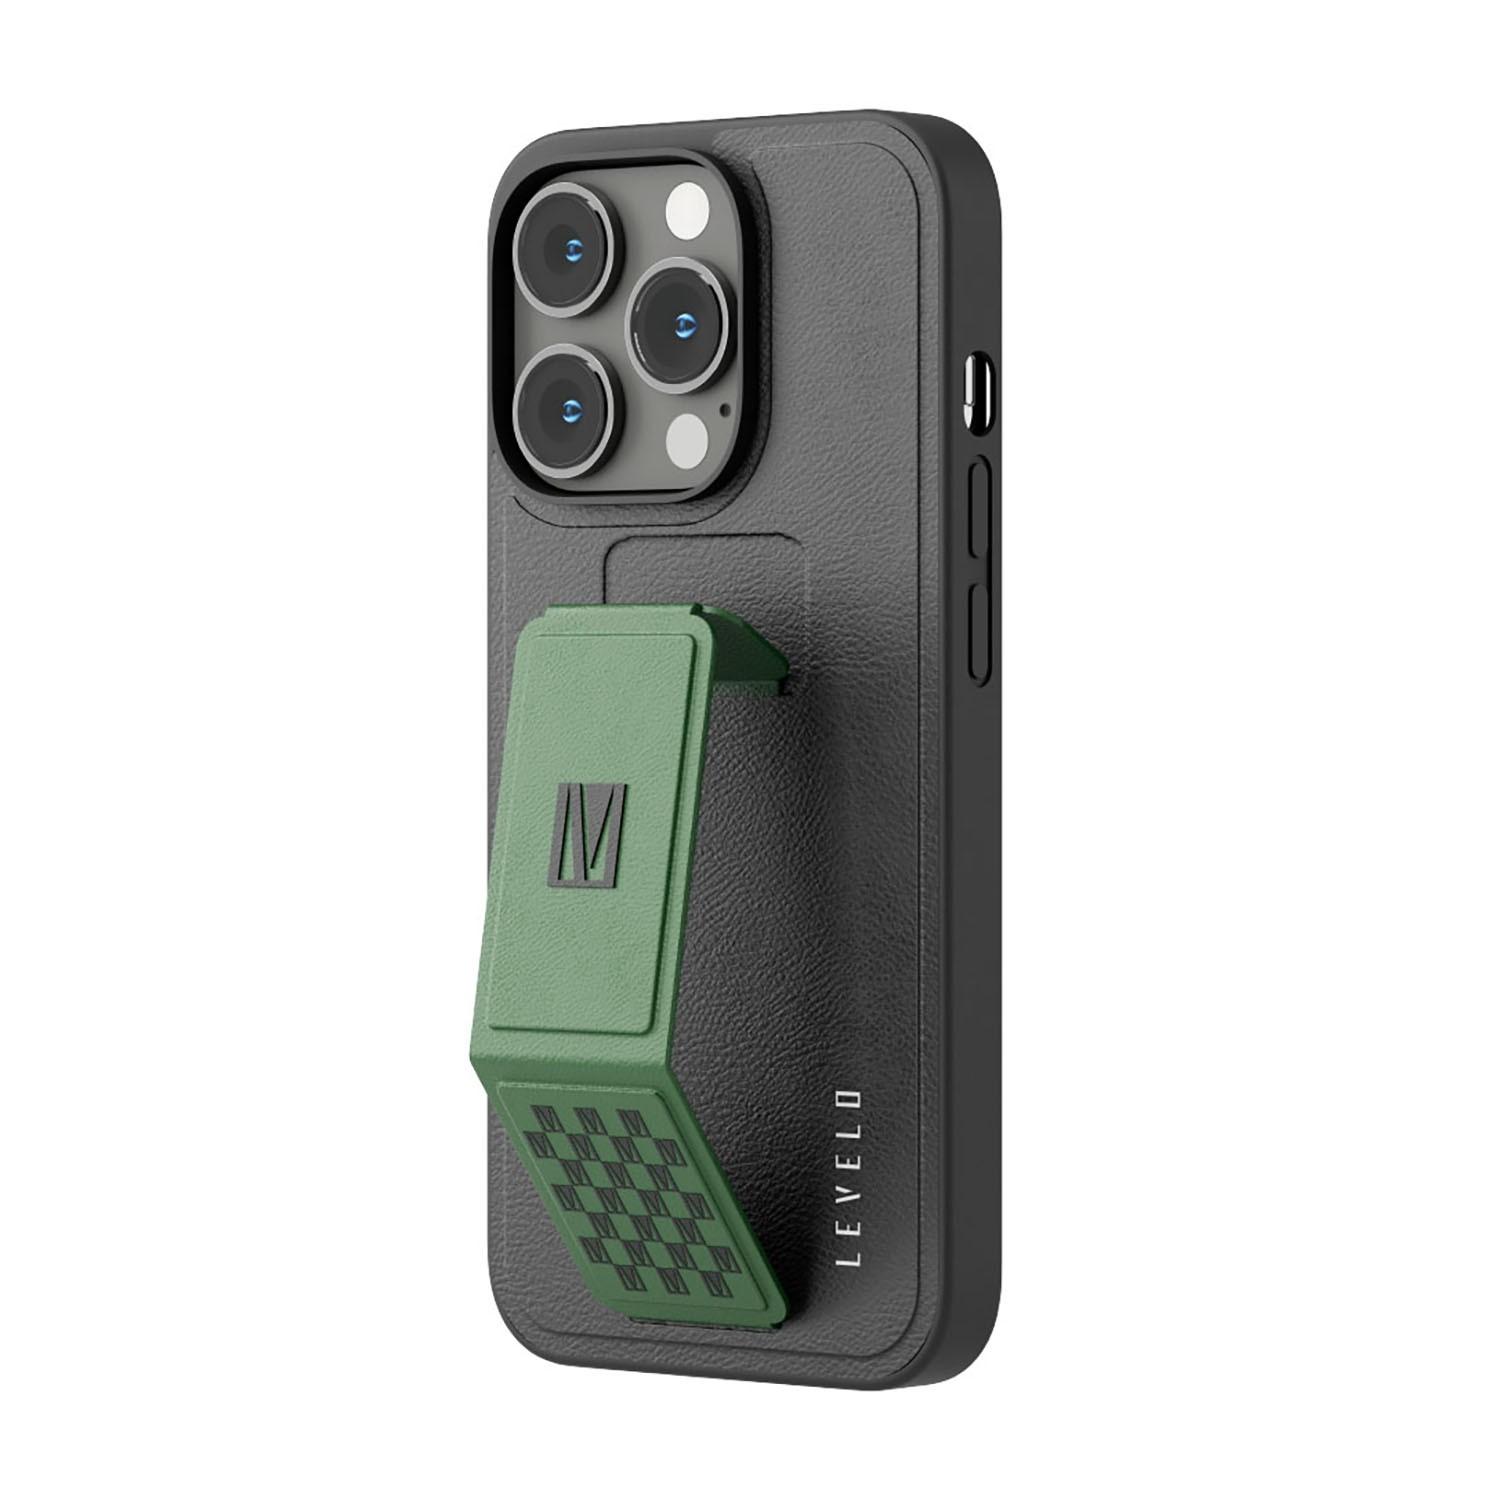 كفر ايفون جلد لجوال ايفون 14 برو ماكس بلون أسود وأخضر مع حامل تثبيت ليفيلو   Levelo Morphix Gripstand iPhone 14 Pro Max PU Leather Case Pacific Green - cG9zdDoxMzk0MjEy